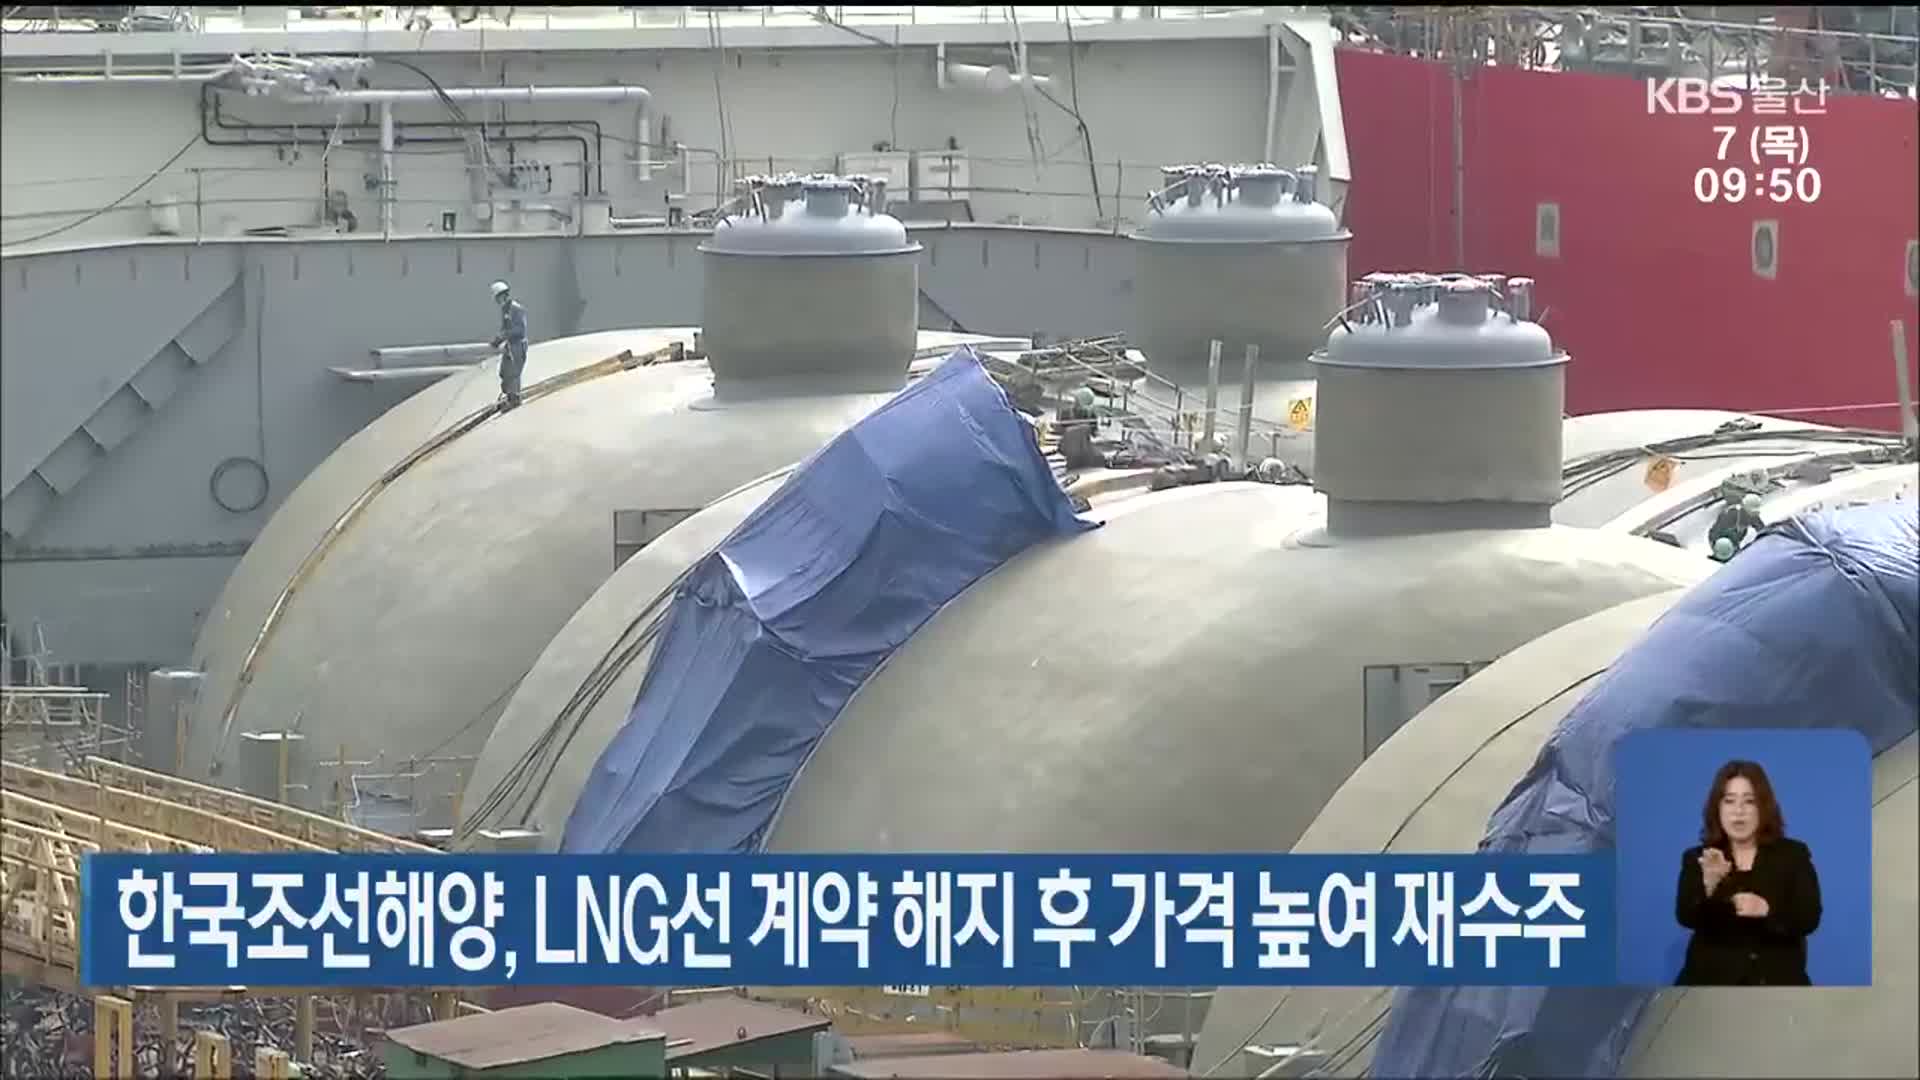 한국조선해양, LNG선 계약 해지 후 가격 높여 재수주